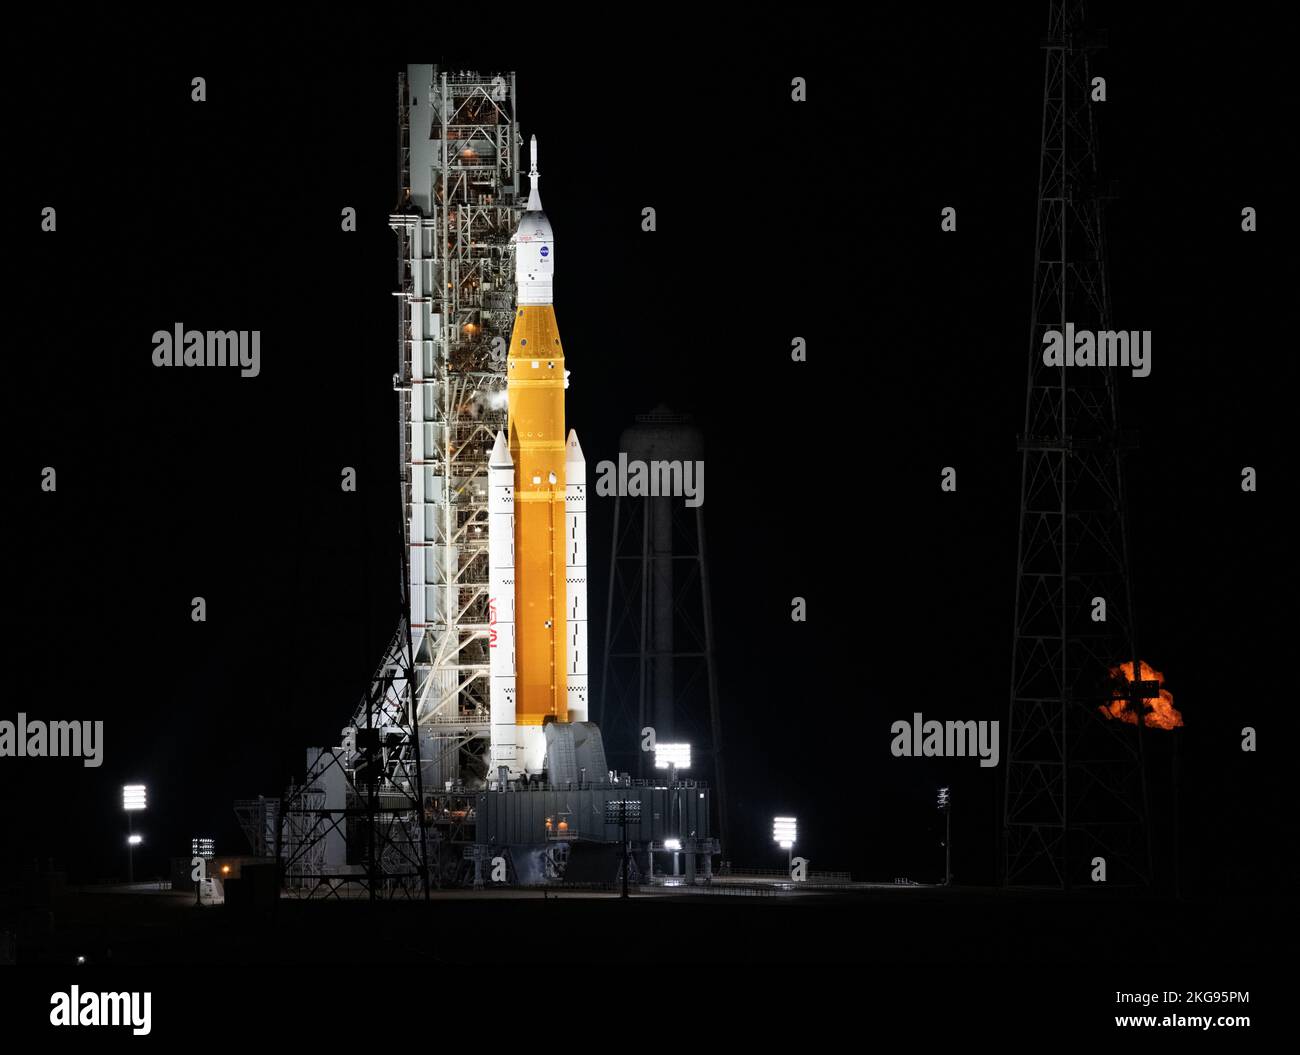 KENNEDY SPACE CE CE|NTRE, FLORIDA, EE.UU. - 16 de noviembre de 2022 - El cohete Space Launch System (SLS) de la NNASA con la nave espacial Orion a bordo se ve encima del mo Foto de stock